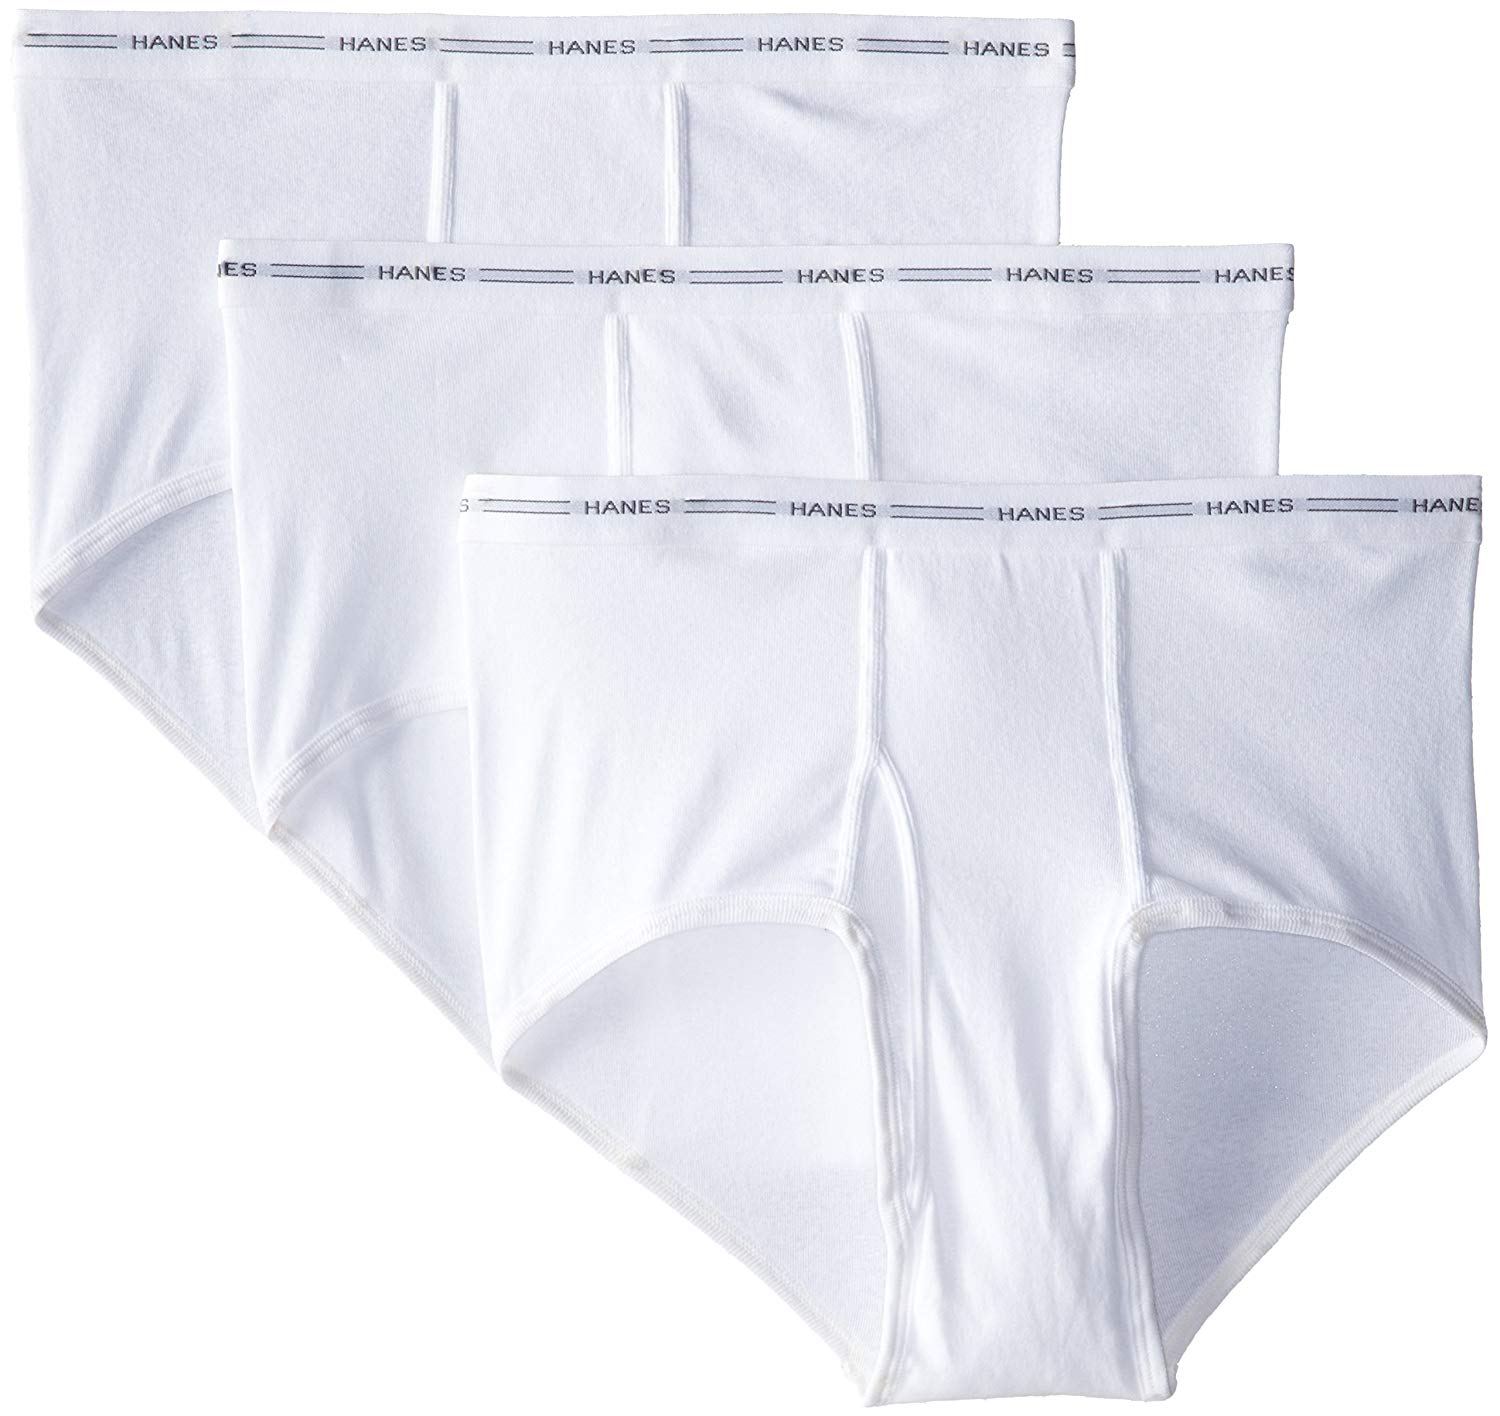 Hanes Men's 3-Pack Extended Sizes Full Rise Briefs,, White, Size XXX ...